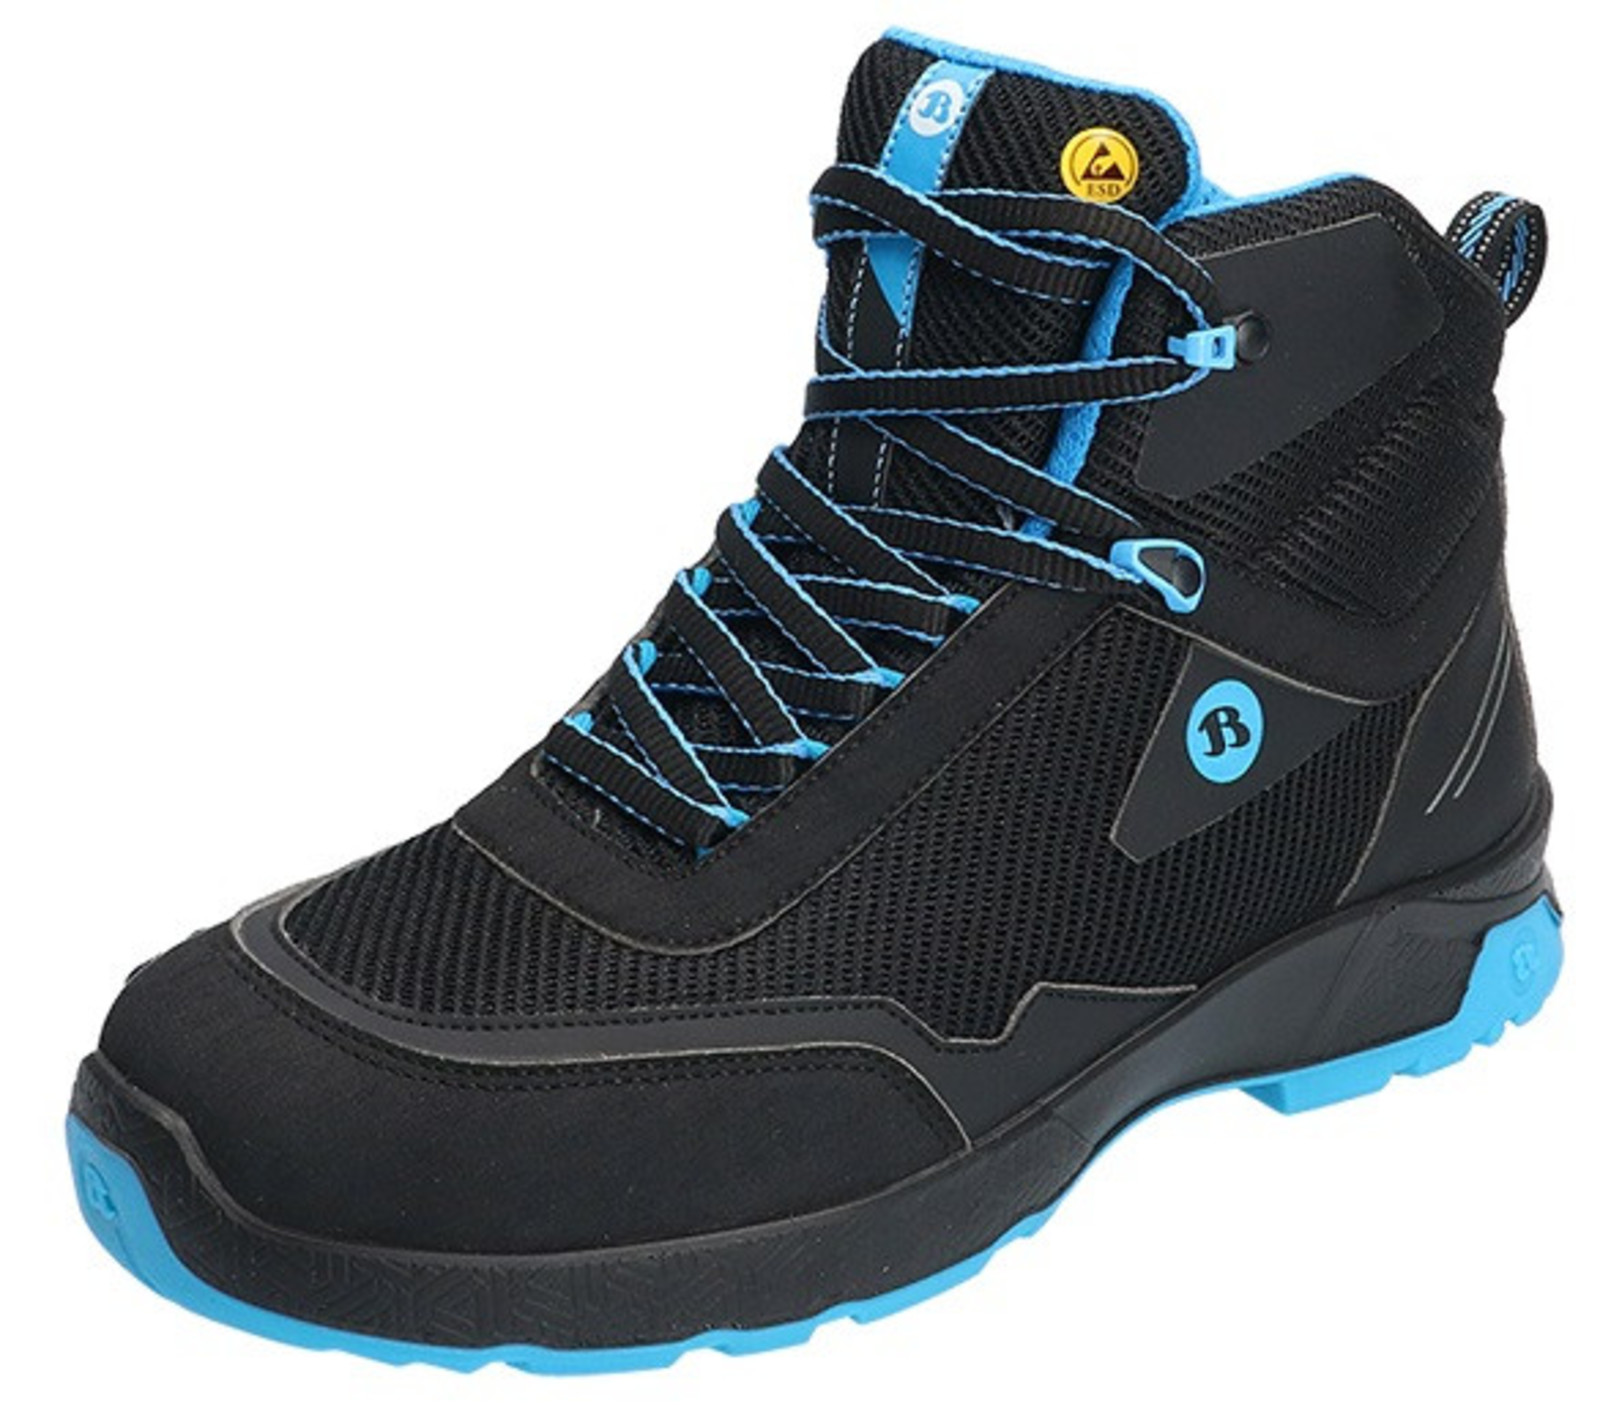 Bezpečnostná členková obuv Baťa Summ One S3 ESD - veľkosť: 48, farba: čierna